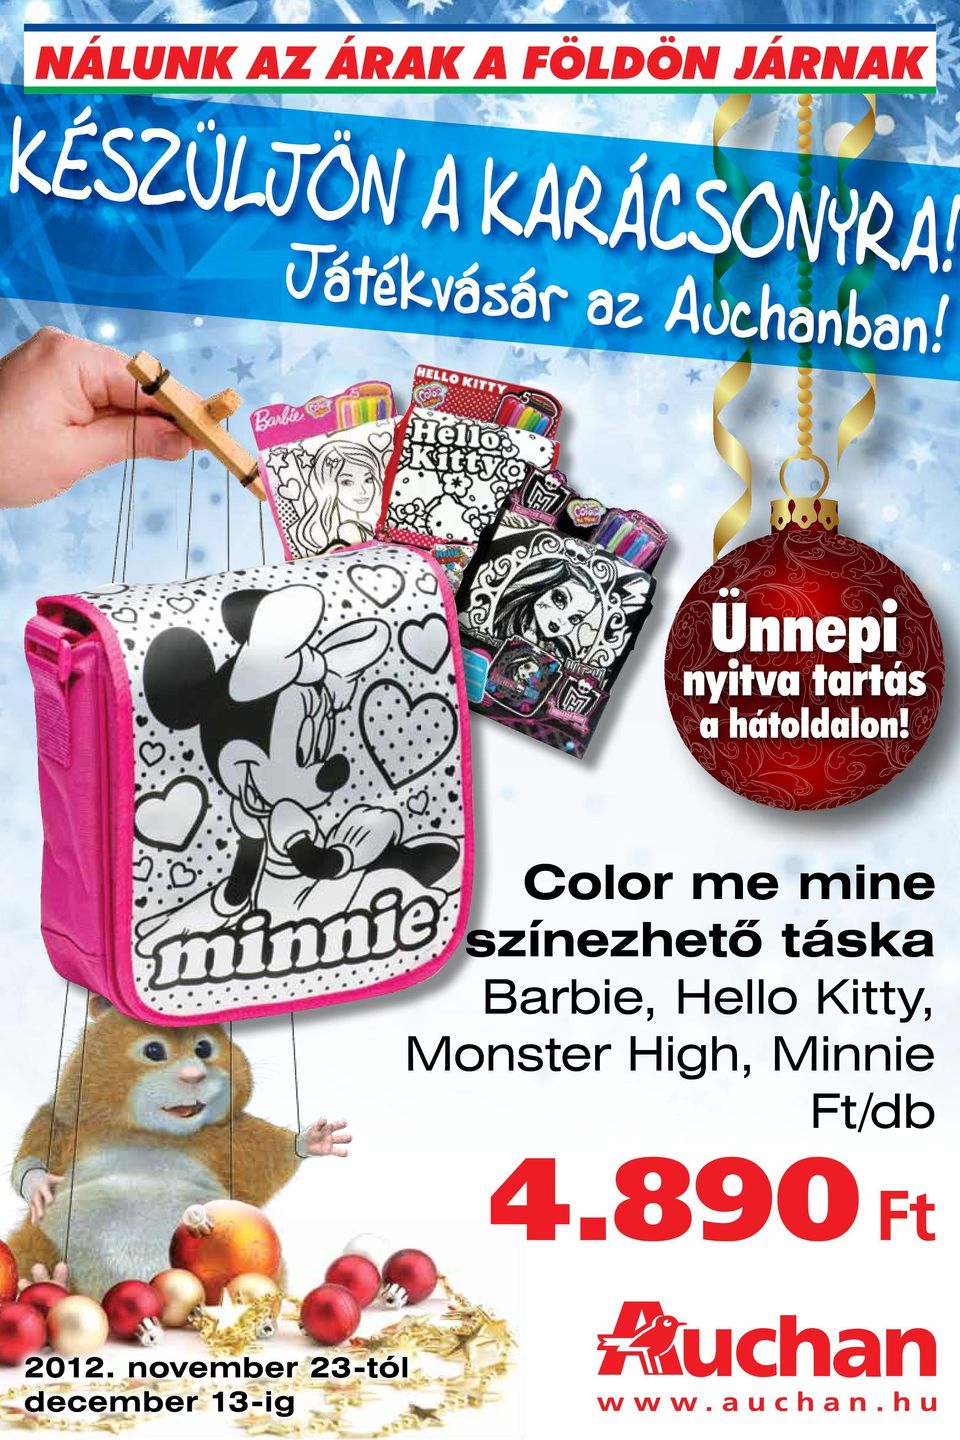 2012. november 23-tól december 13-ig. Color me mine színezhető táska  Barbie, Hello Kitty, Monster High, Minnie Ft/db Ft - PDF Ingyenes letöltés